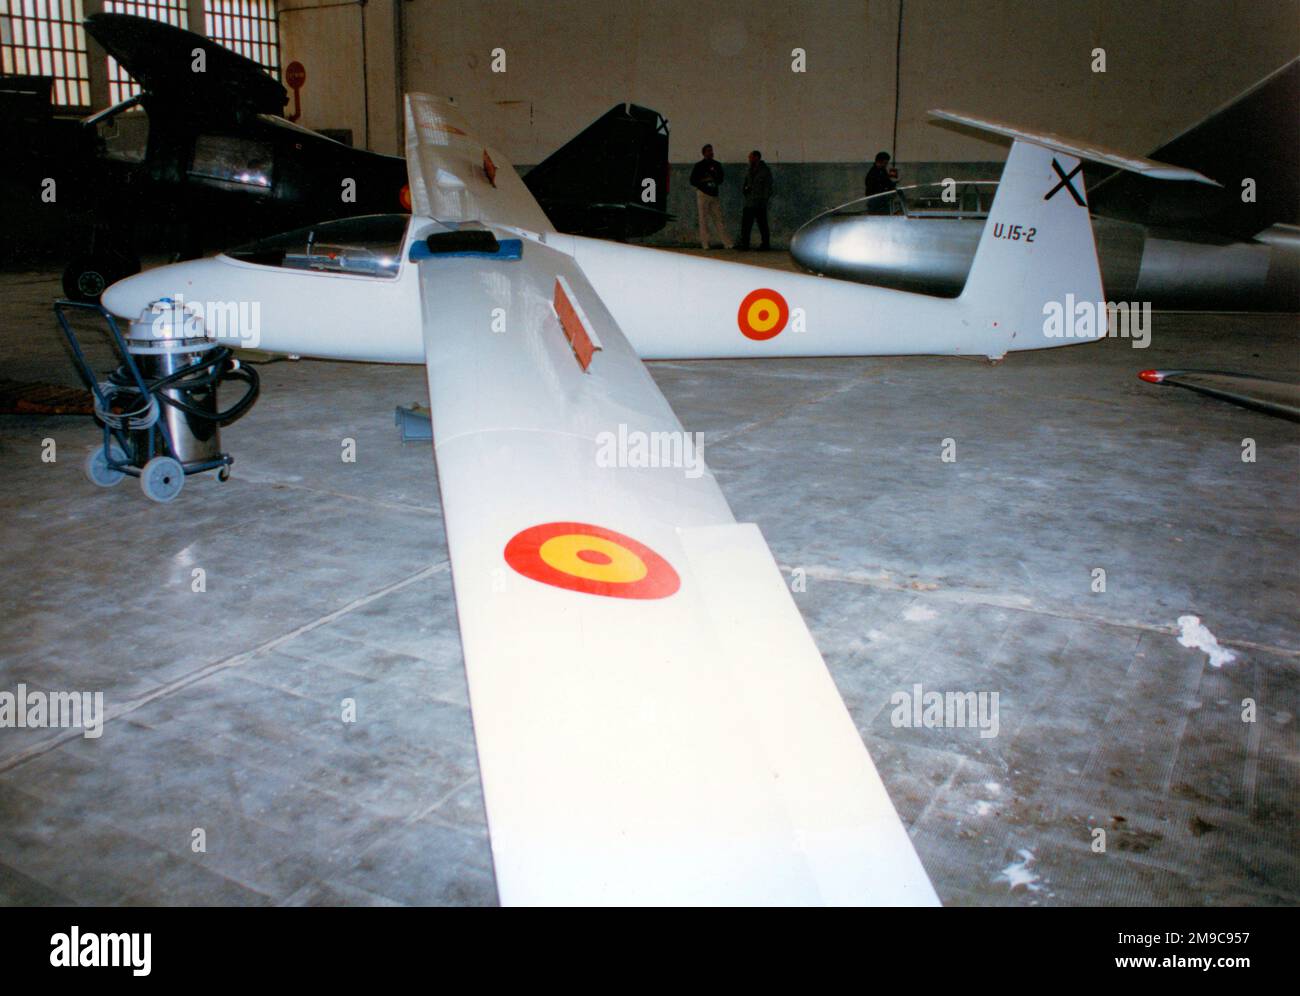 Ejercito del aire - SZD-30 Pirat U.15-2. (Ejercito del aire - armée de l'air espagnole). Banque D'Images